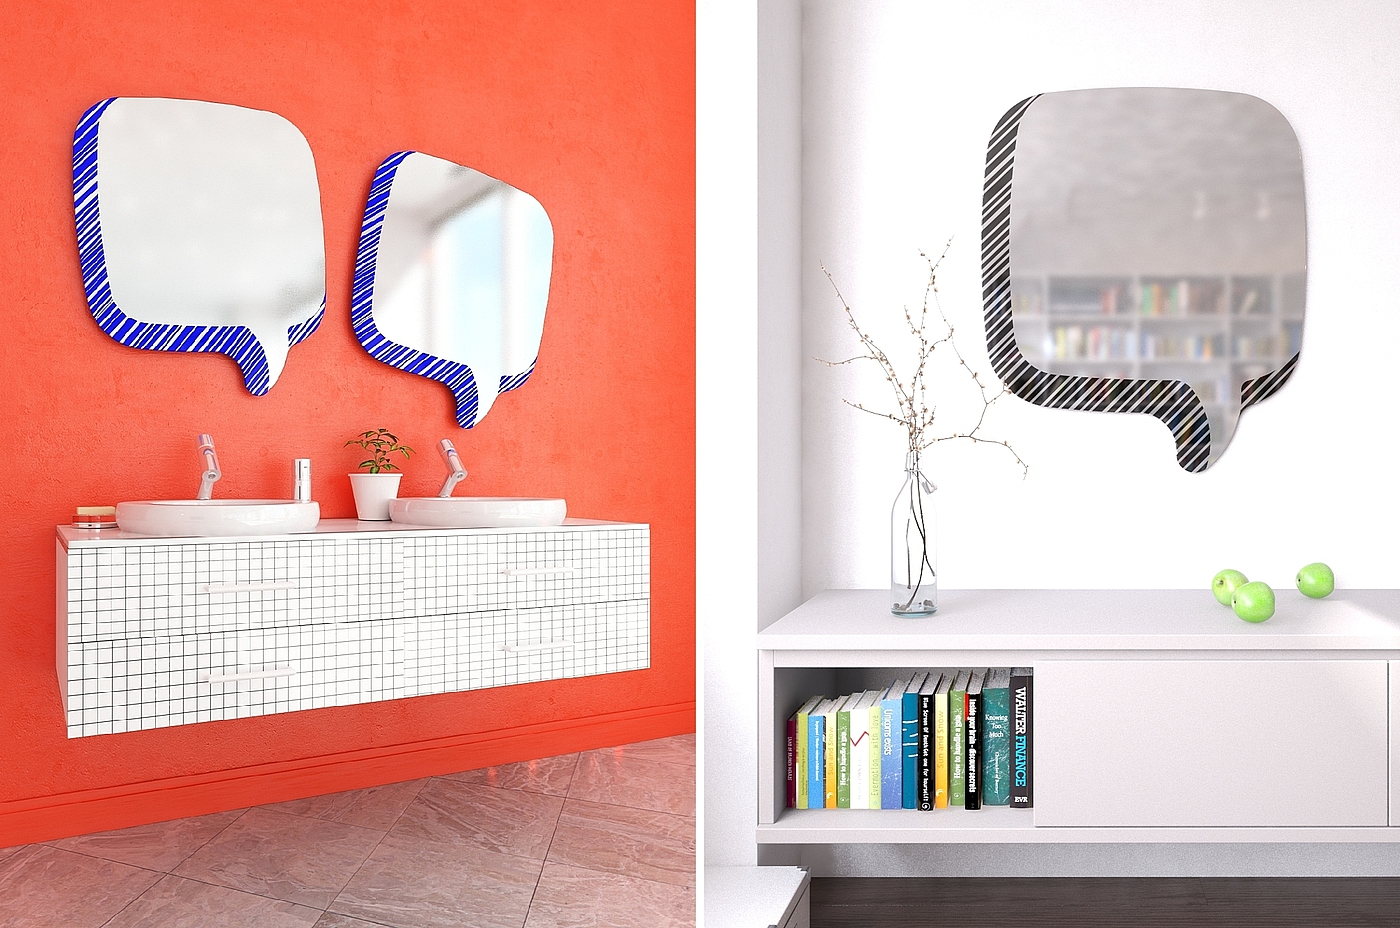 ZHUOSE 现代客厅浴室拱形镜子_设计素材库免费下载-美间设计